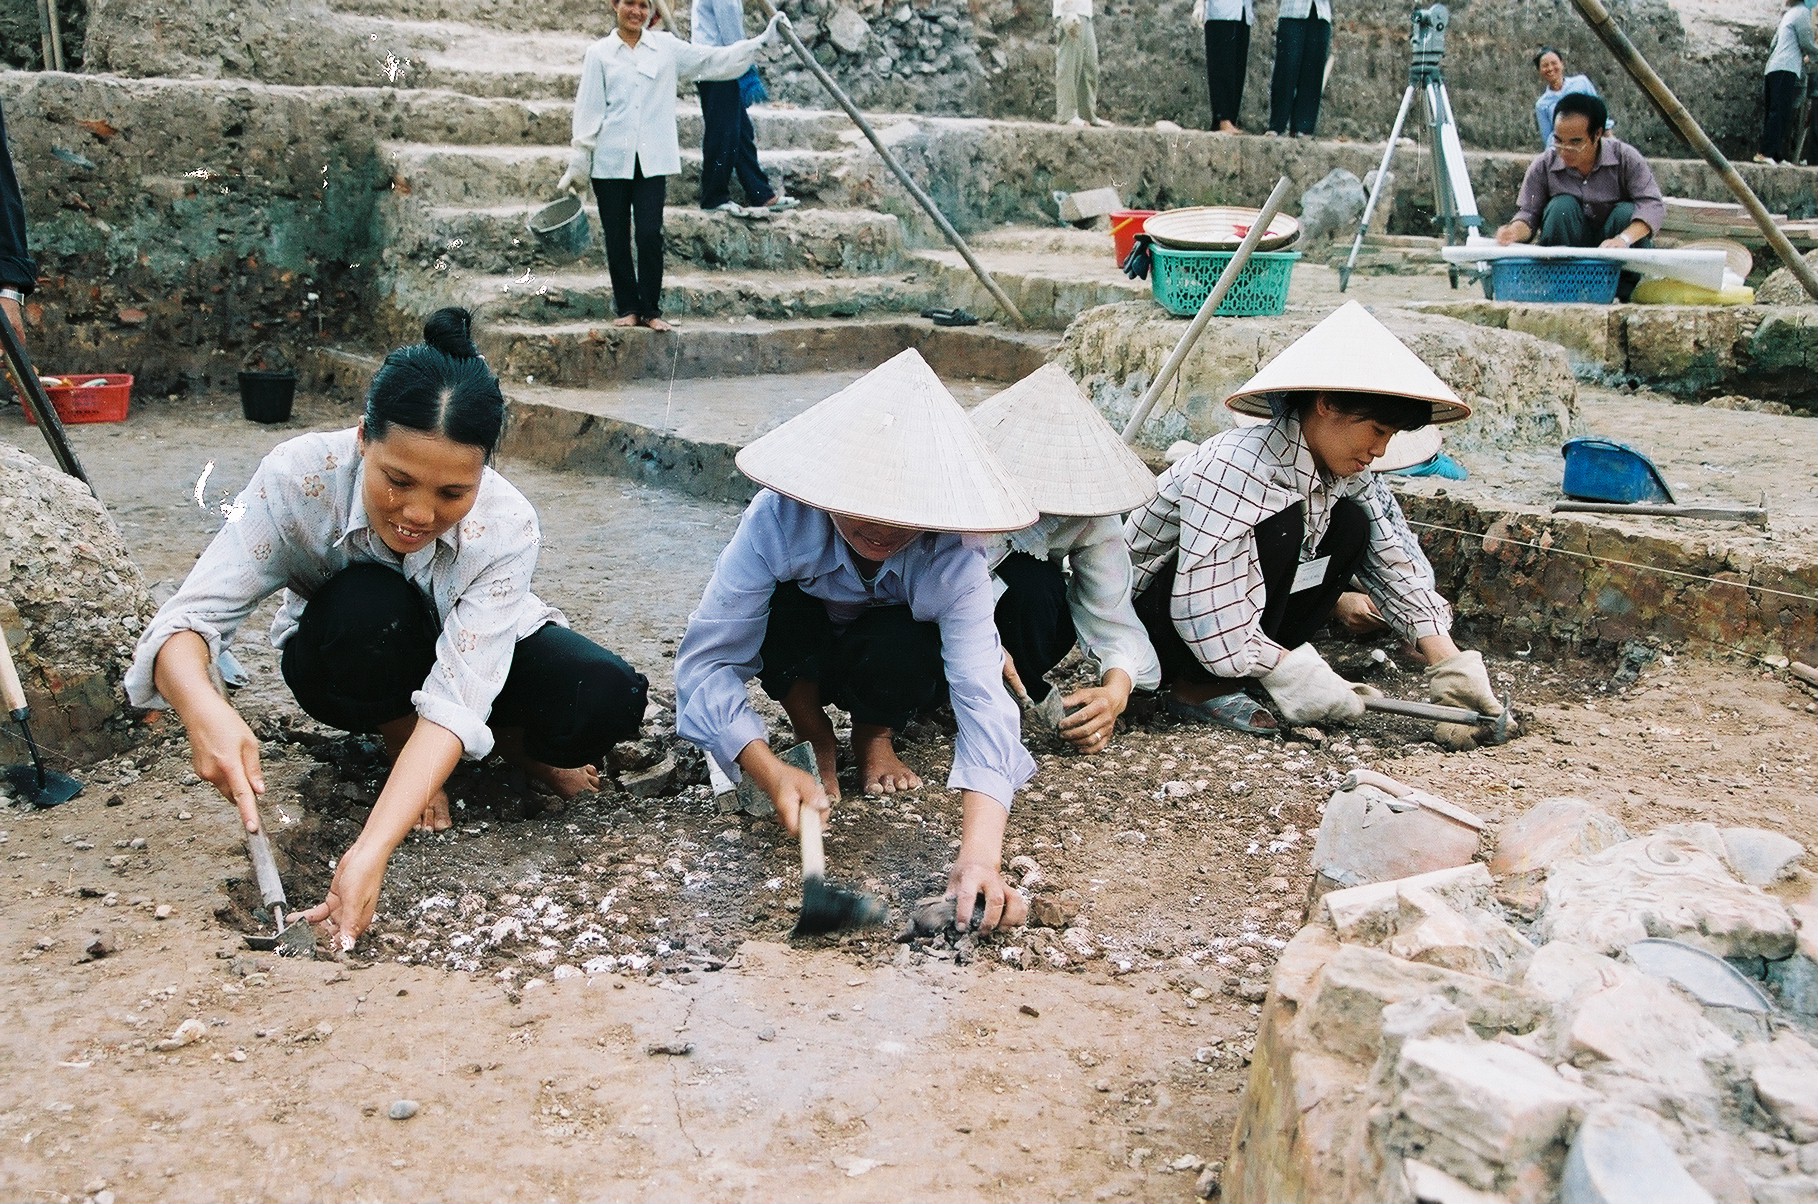 Hố khai quật được đào sâu ở giai đoạn đầu của cuộc khai quật. Trong ảnh là một khoảng sân được lát bằng vỏ sò (Khu B). Ảnh: Viện Khảo cổ học (2003).